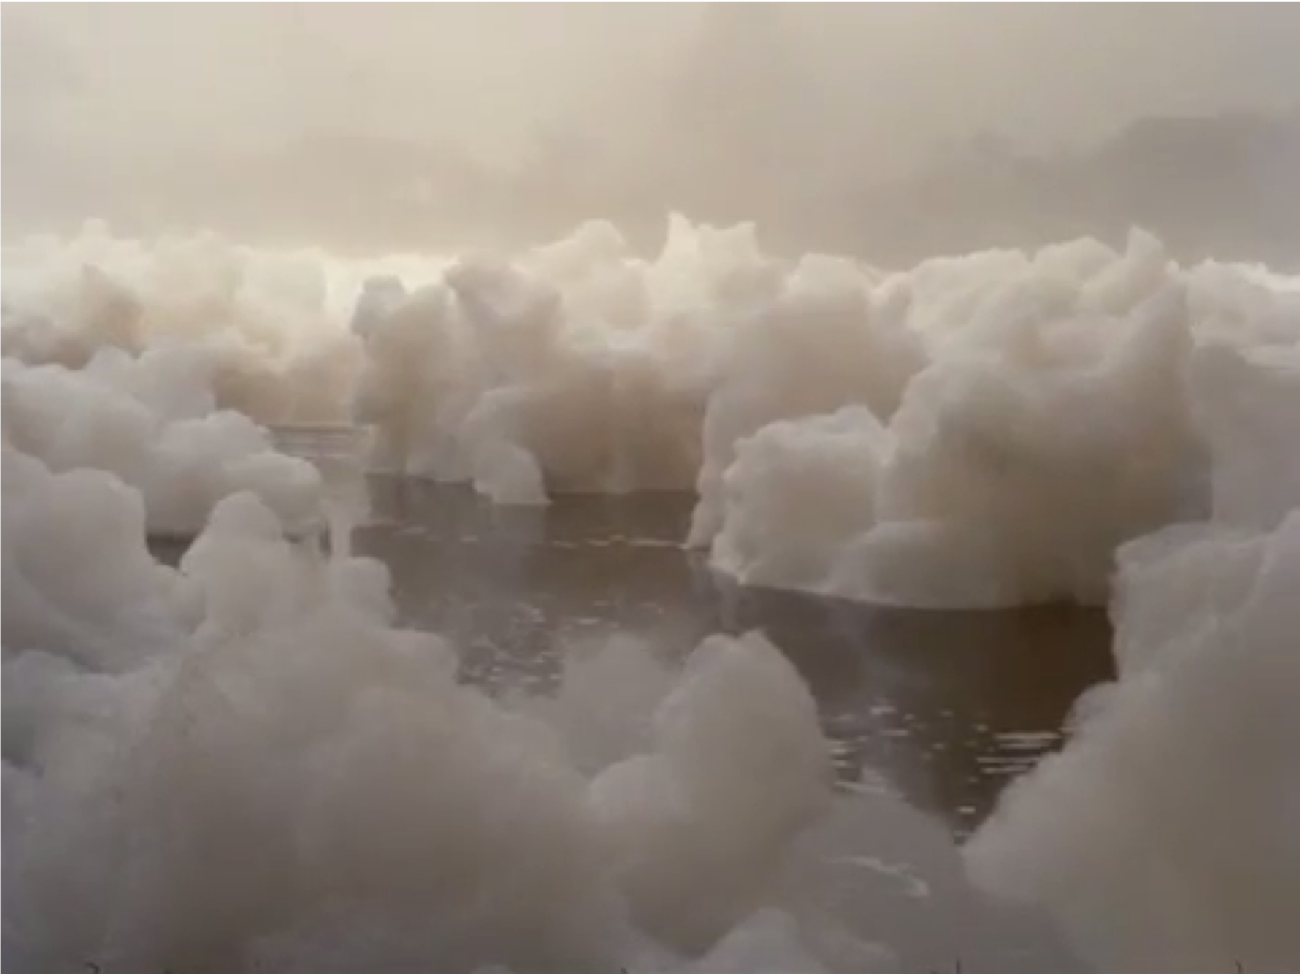 Film still of white foam floating on the river.